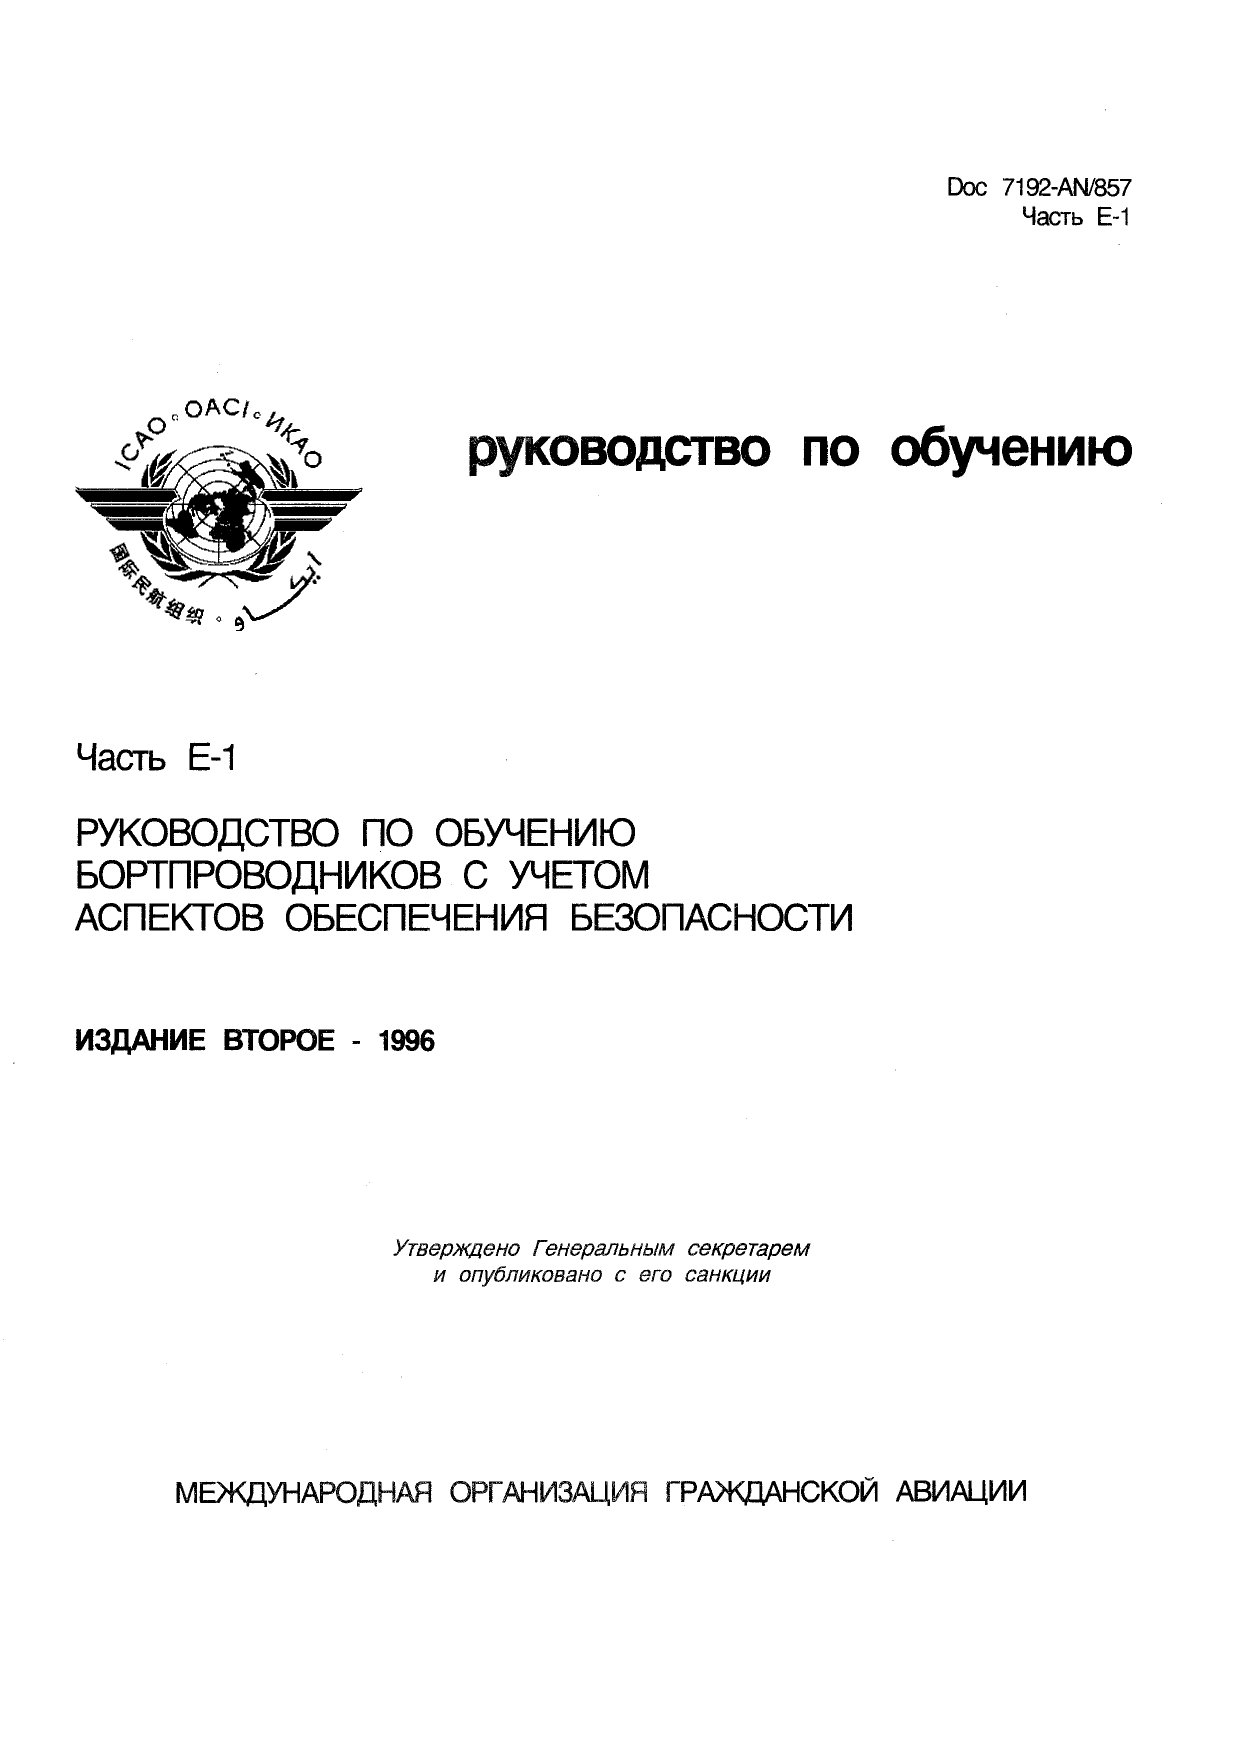 ICAO Doc 7192 Руководство по обучению. Часть E-1. Руководство по обучению бортпроводников с учетом аспектов обеспечения безопасности. Издание второе.